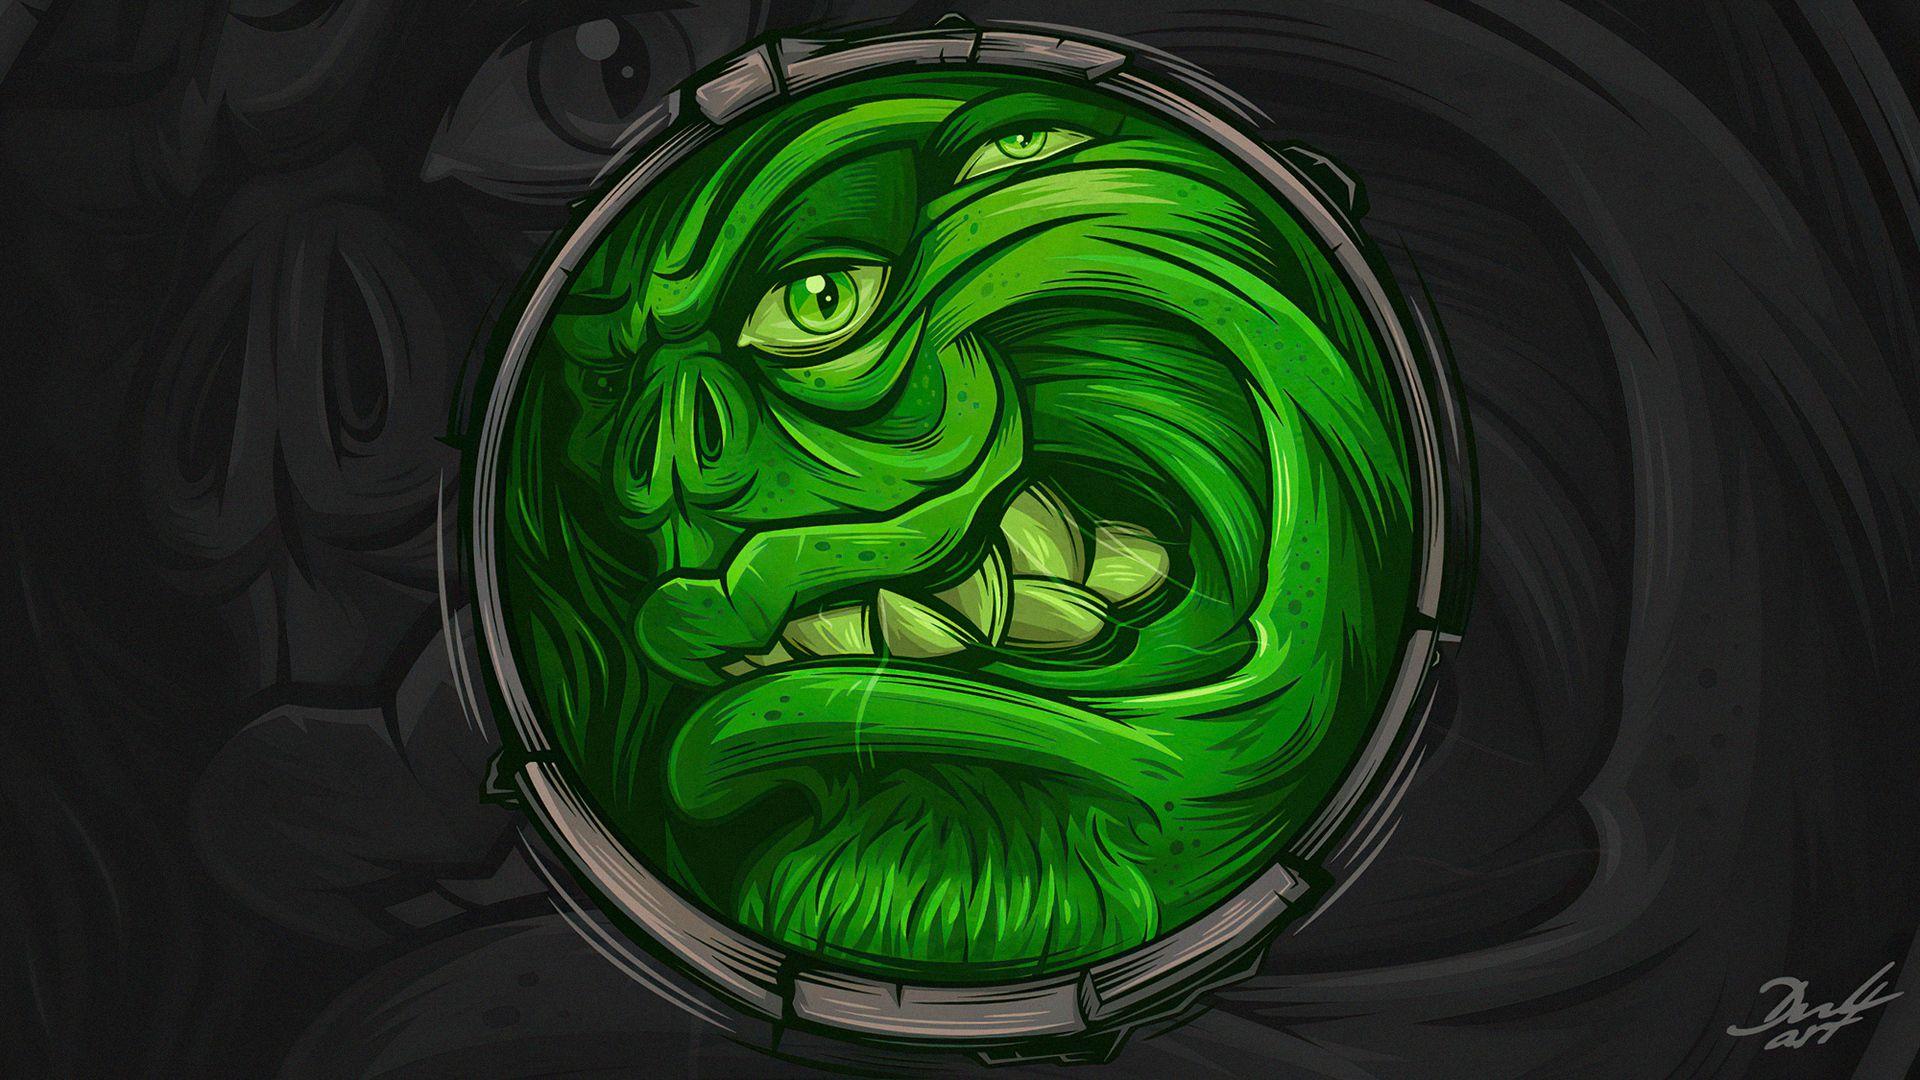 1920x1080 I See You Green Monster Laptop Hình nền Full HD 1080P HD 4k, Hình ảnh, Bối cảnh, Hình ảnh và Hình ảnh